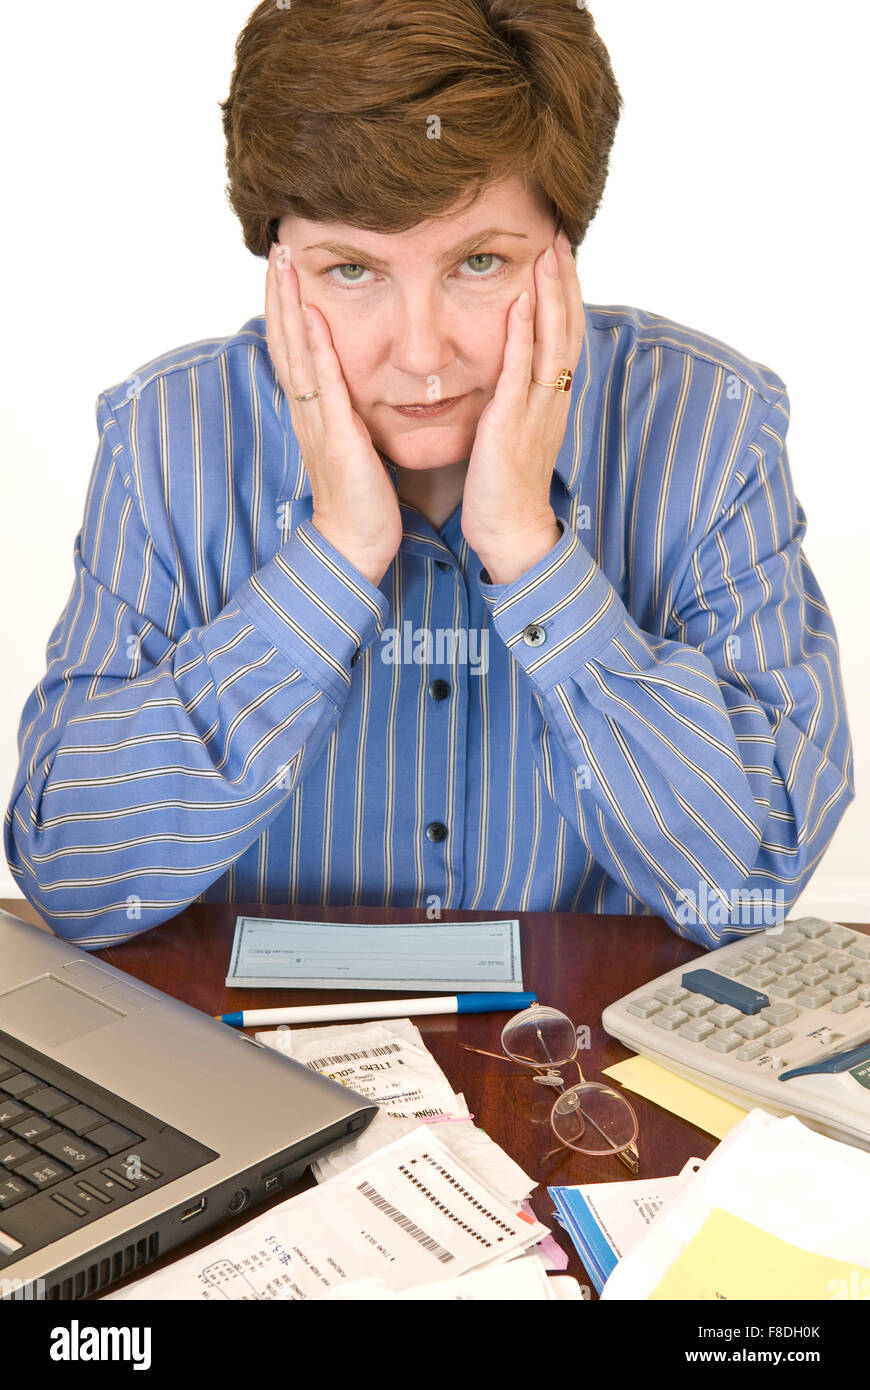 Eine mittlere im Alter von Frau umgeben von ihrem Laptop, Scheckheft, Taschenrechner und Papierkram suchen finanziell überfordert. Stockfoto